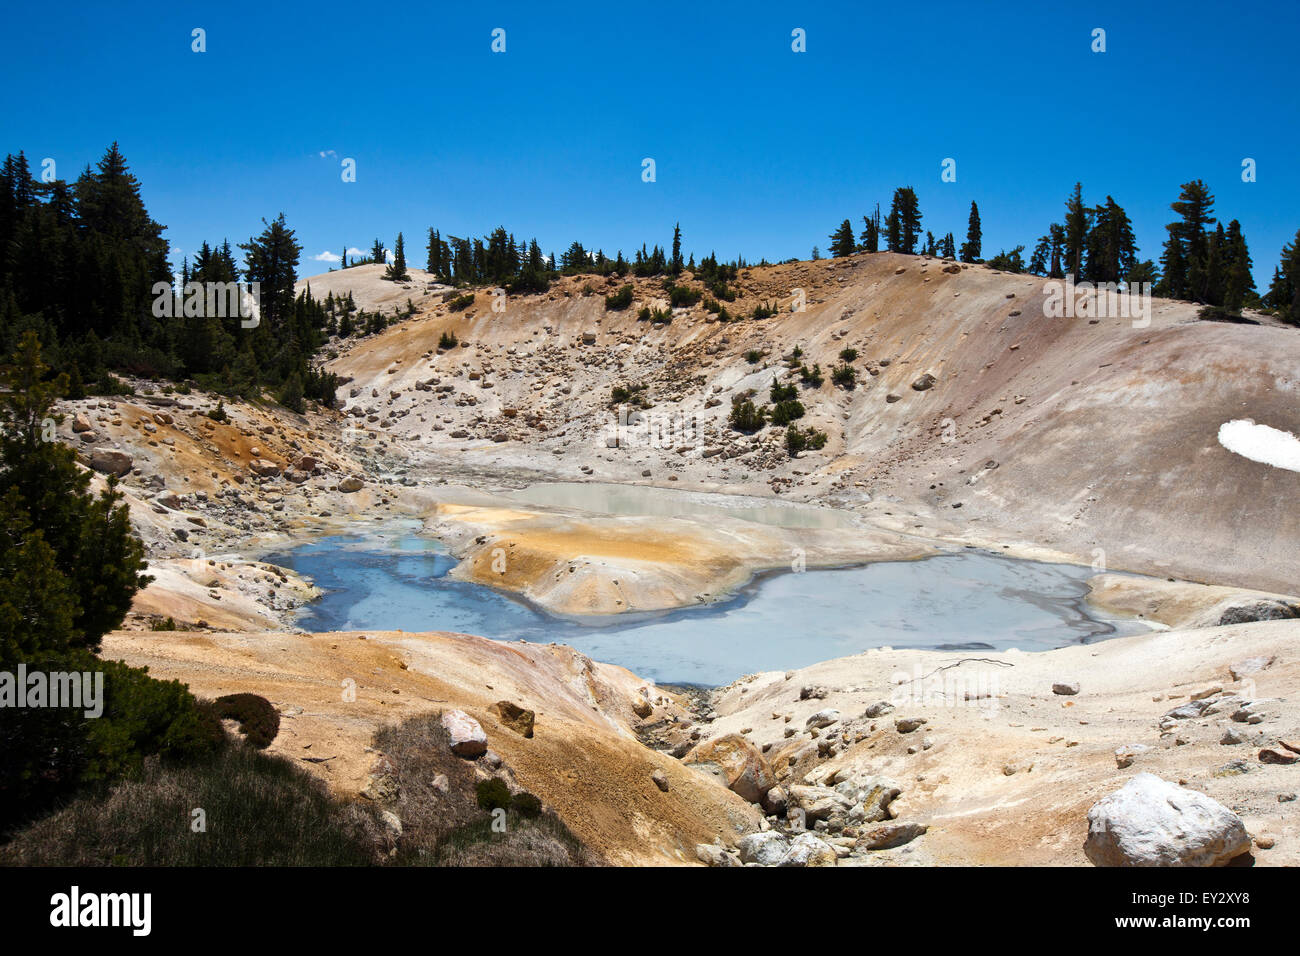 Pool von grau, kochendes Wasser, geothermische Gebiet Bumpass Hell, Lassen Volcanic Nationalpark, Kalifornien, Vereinigte Staaten von Amerika Stockfoto